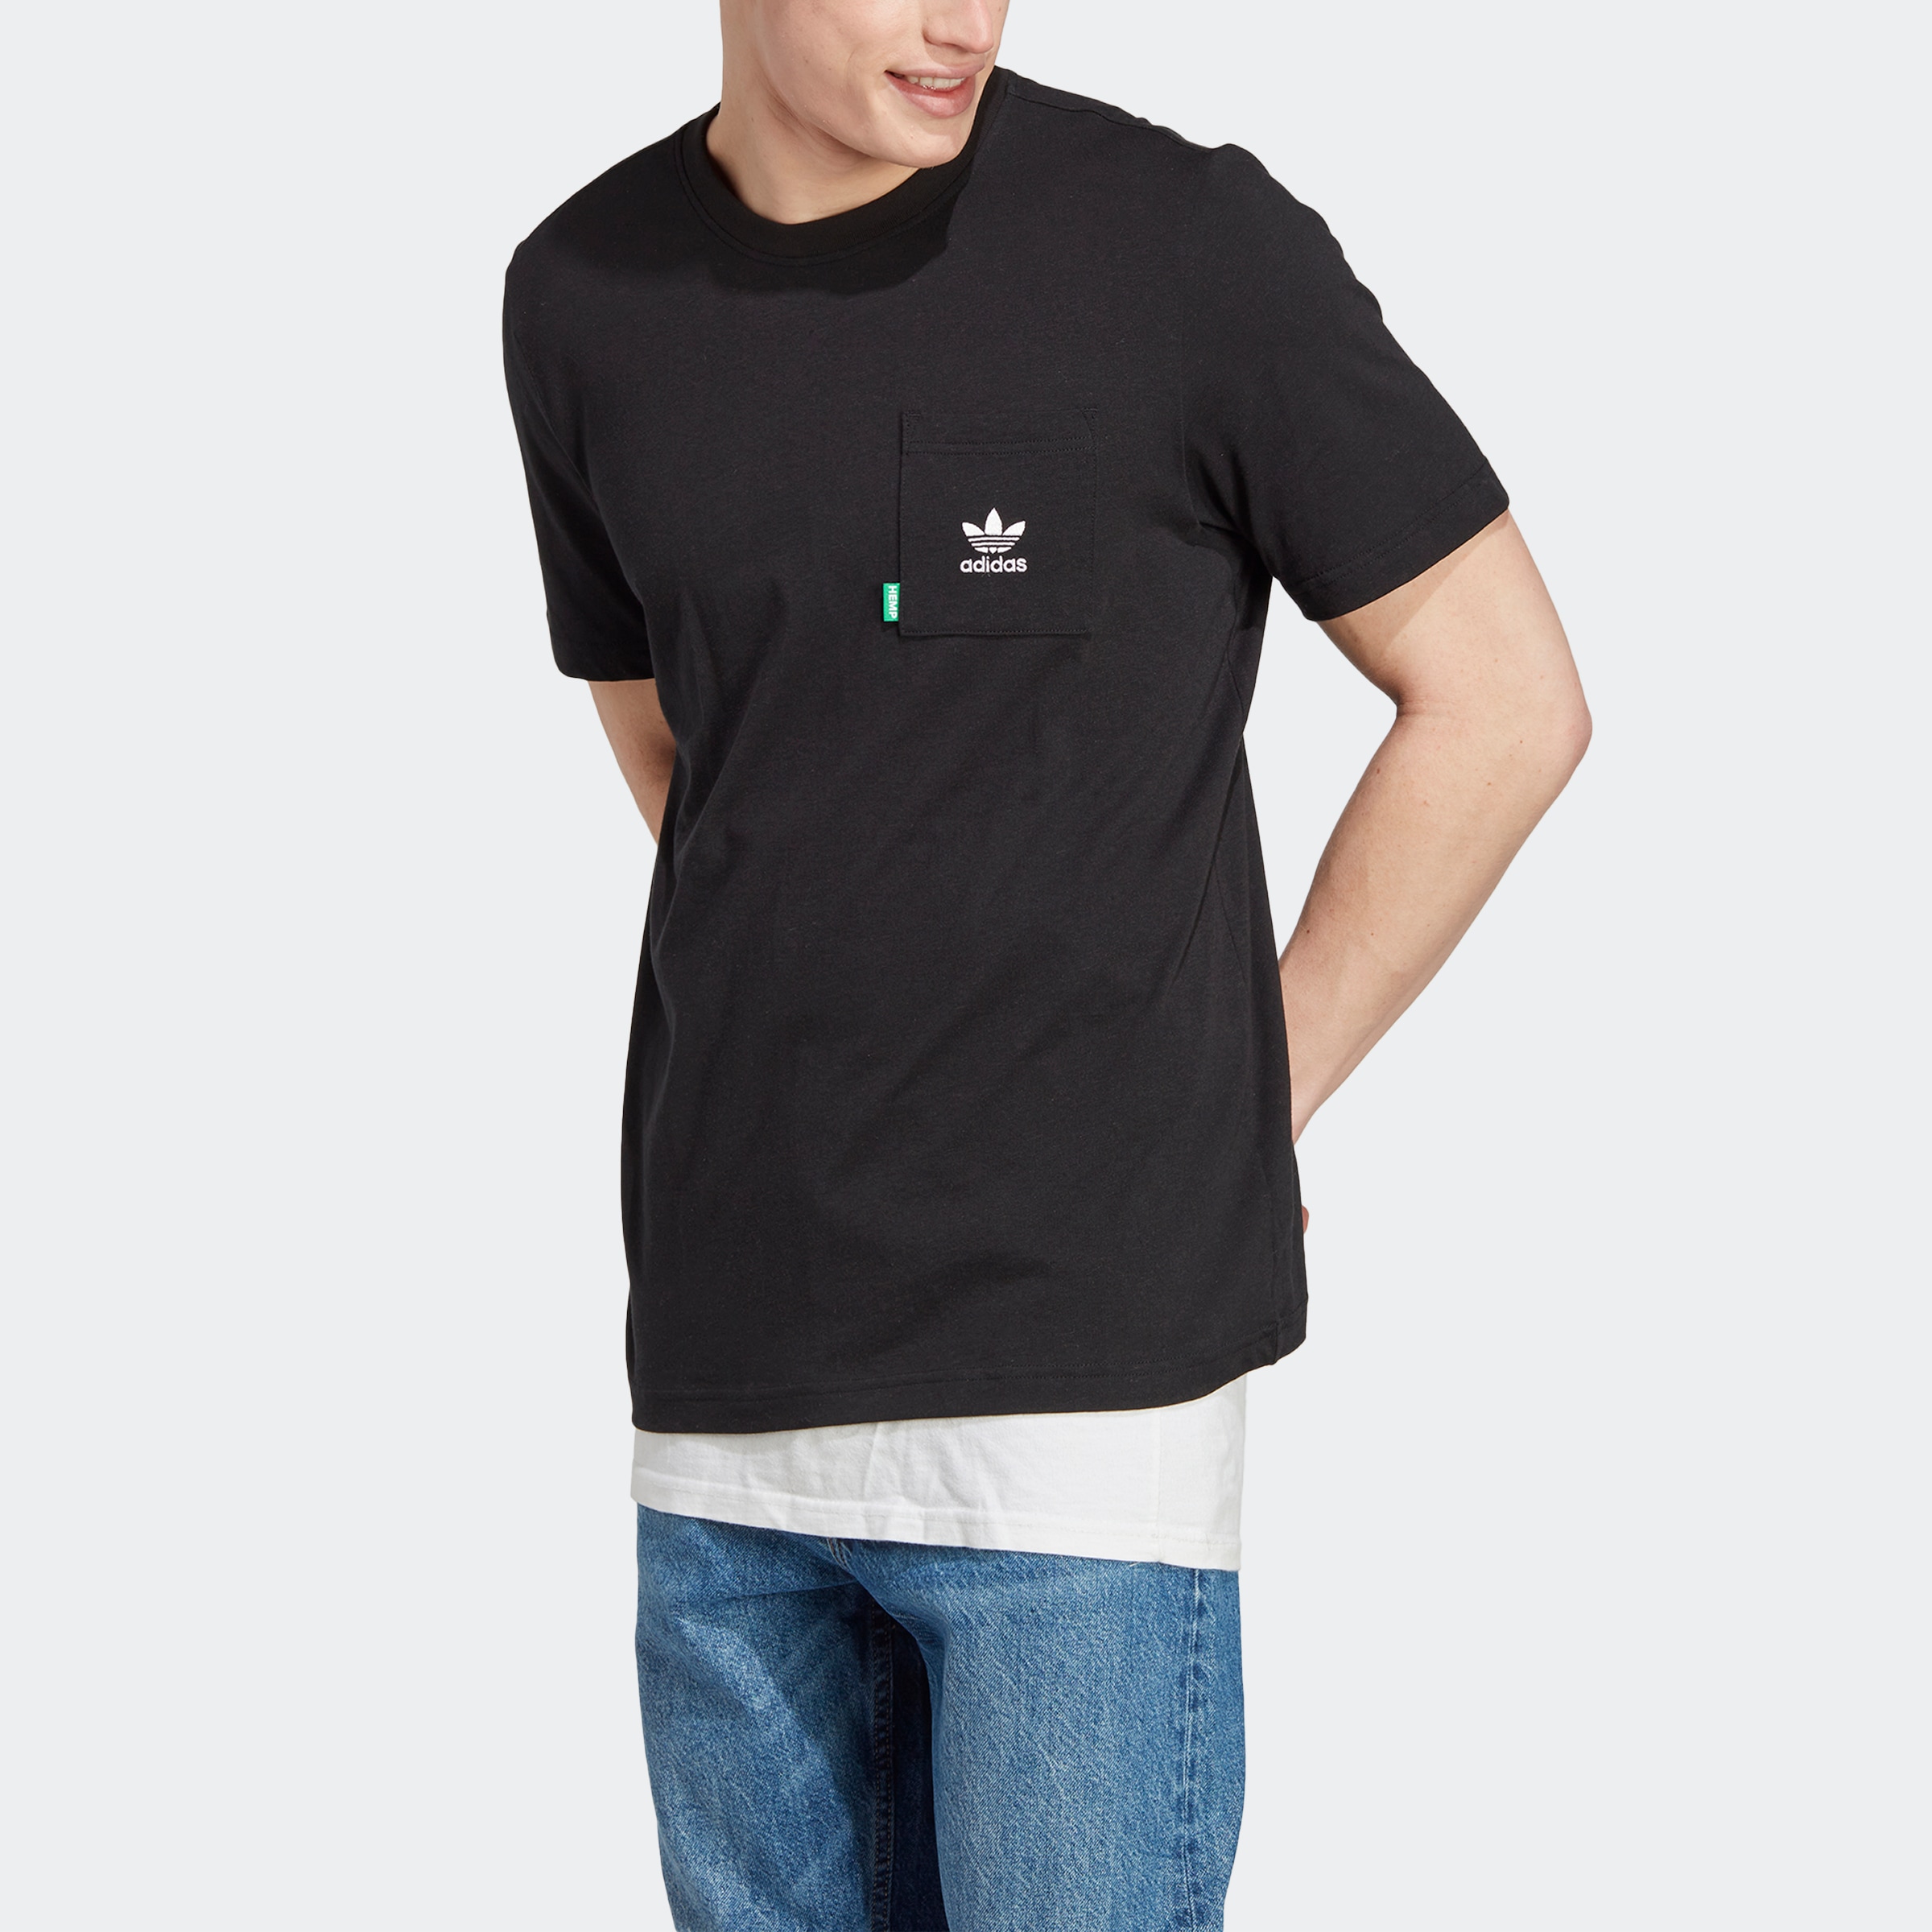 WITH OTTO »ESSENTIALS+ HEMP« bestellen Originals adidas bei T-Shirt MADE online